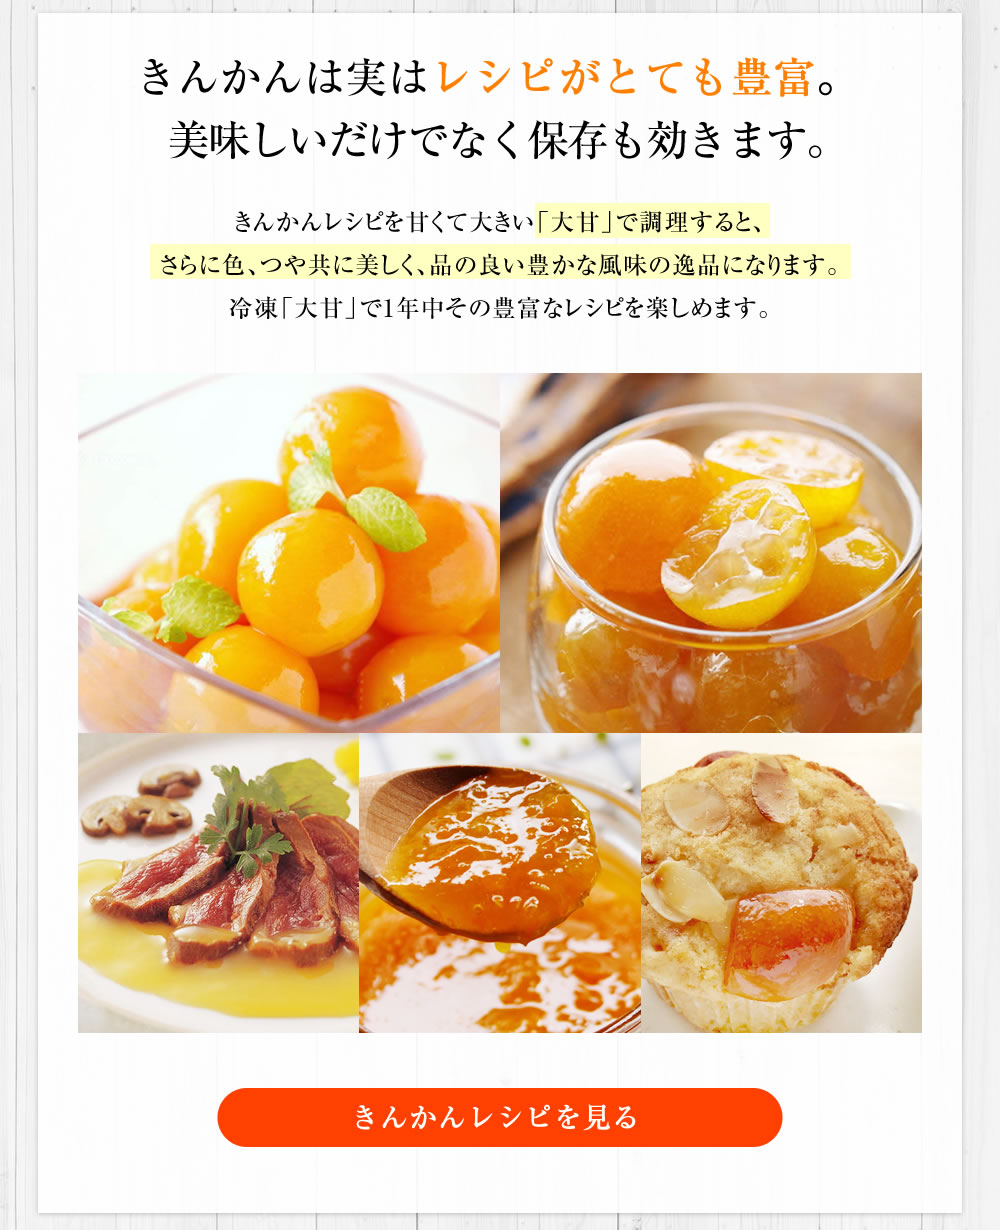 冷凍フルーツ金柑「大甘（だいかん）」 